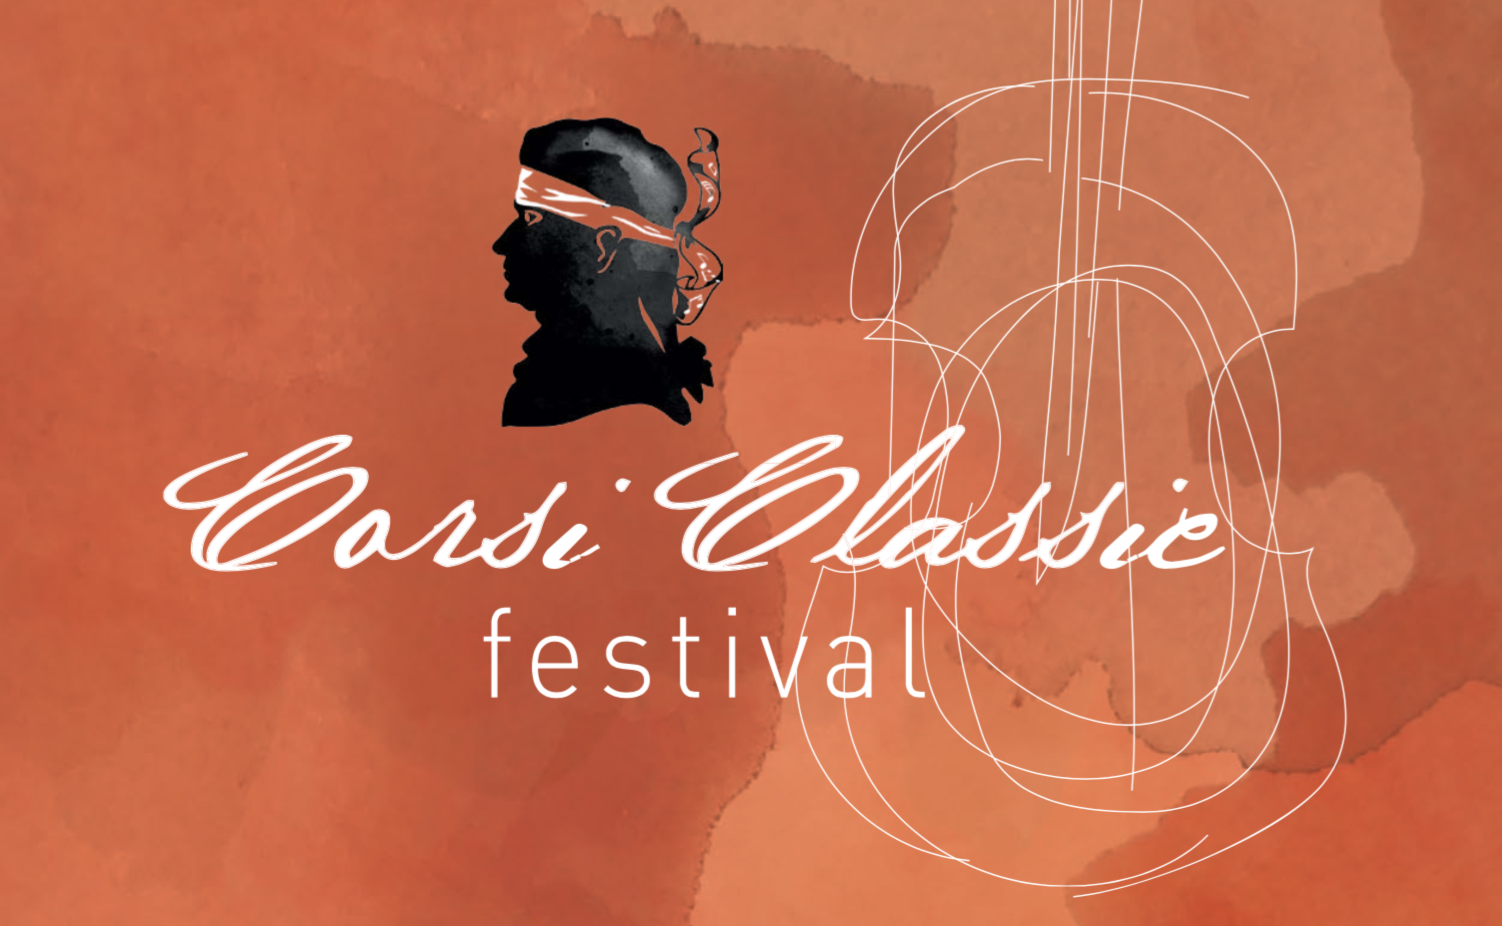 CorsiClassic Festival : September 22 to 25